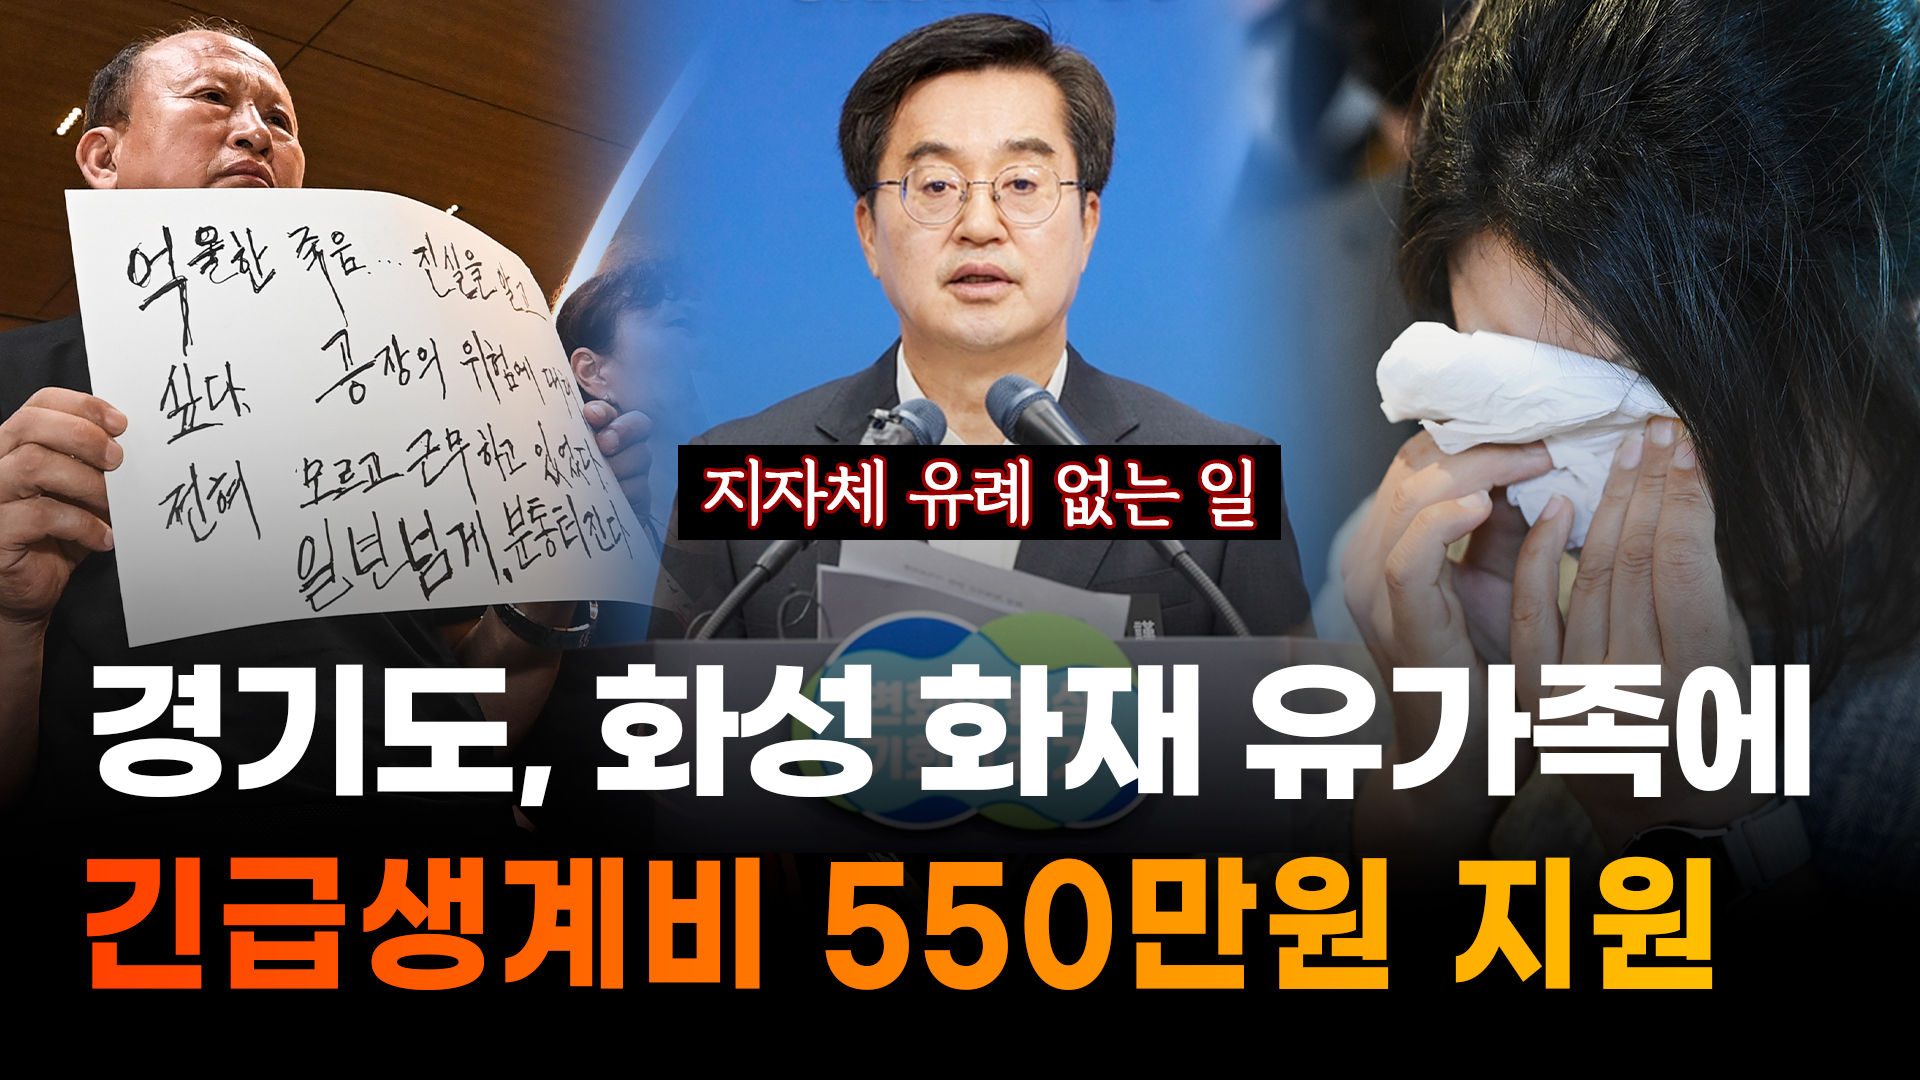 [영상+] 김동연, 화성 리튬공장 화재 유가족에 긴급생계비 550만원 지급